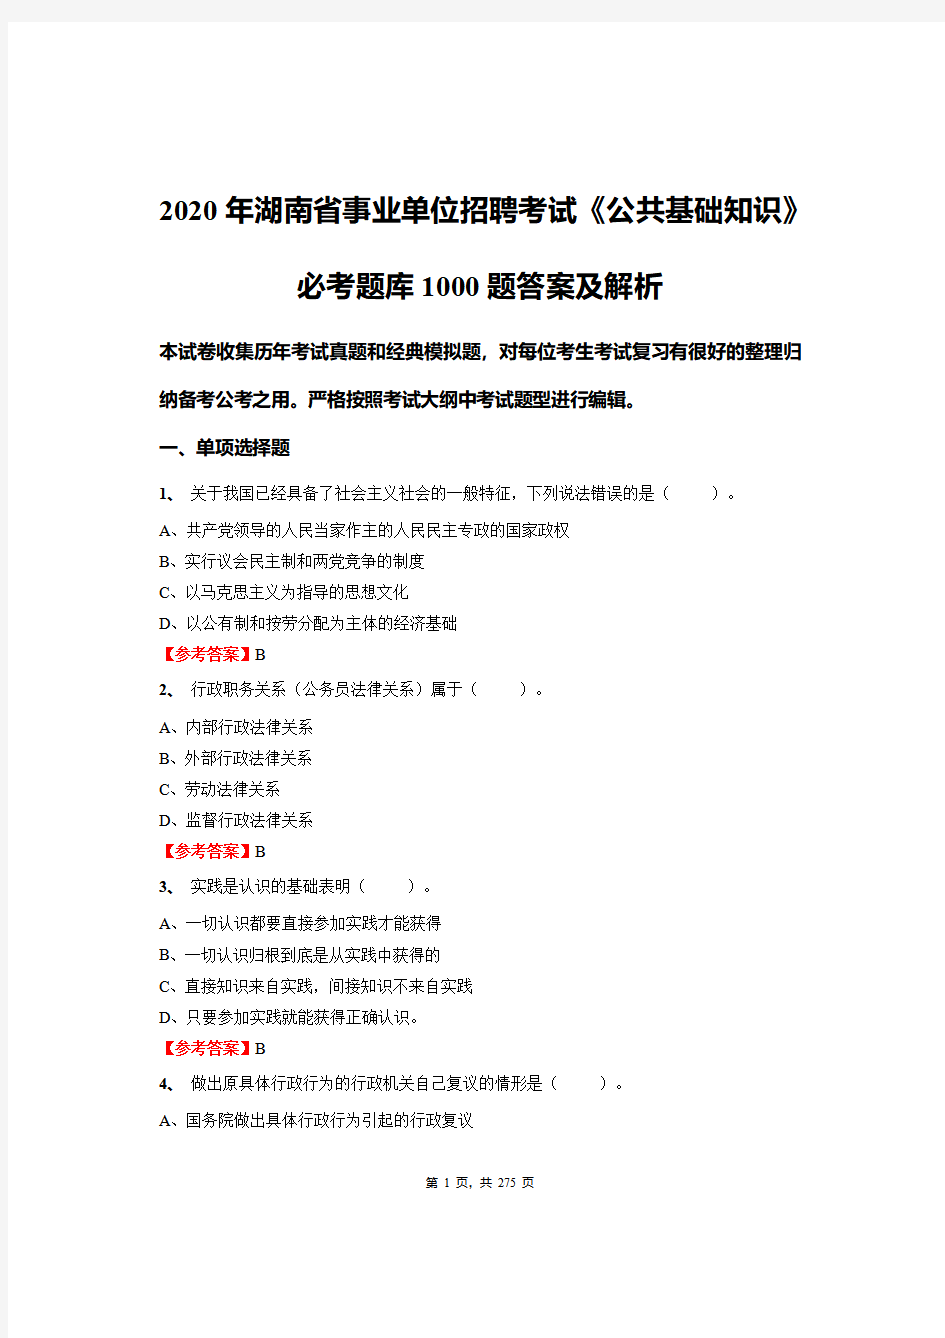 2020年湖南省事业单位招聘考试《公共基础知识》必考题库1000题答案及解析